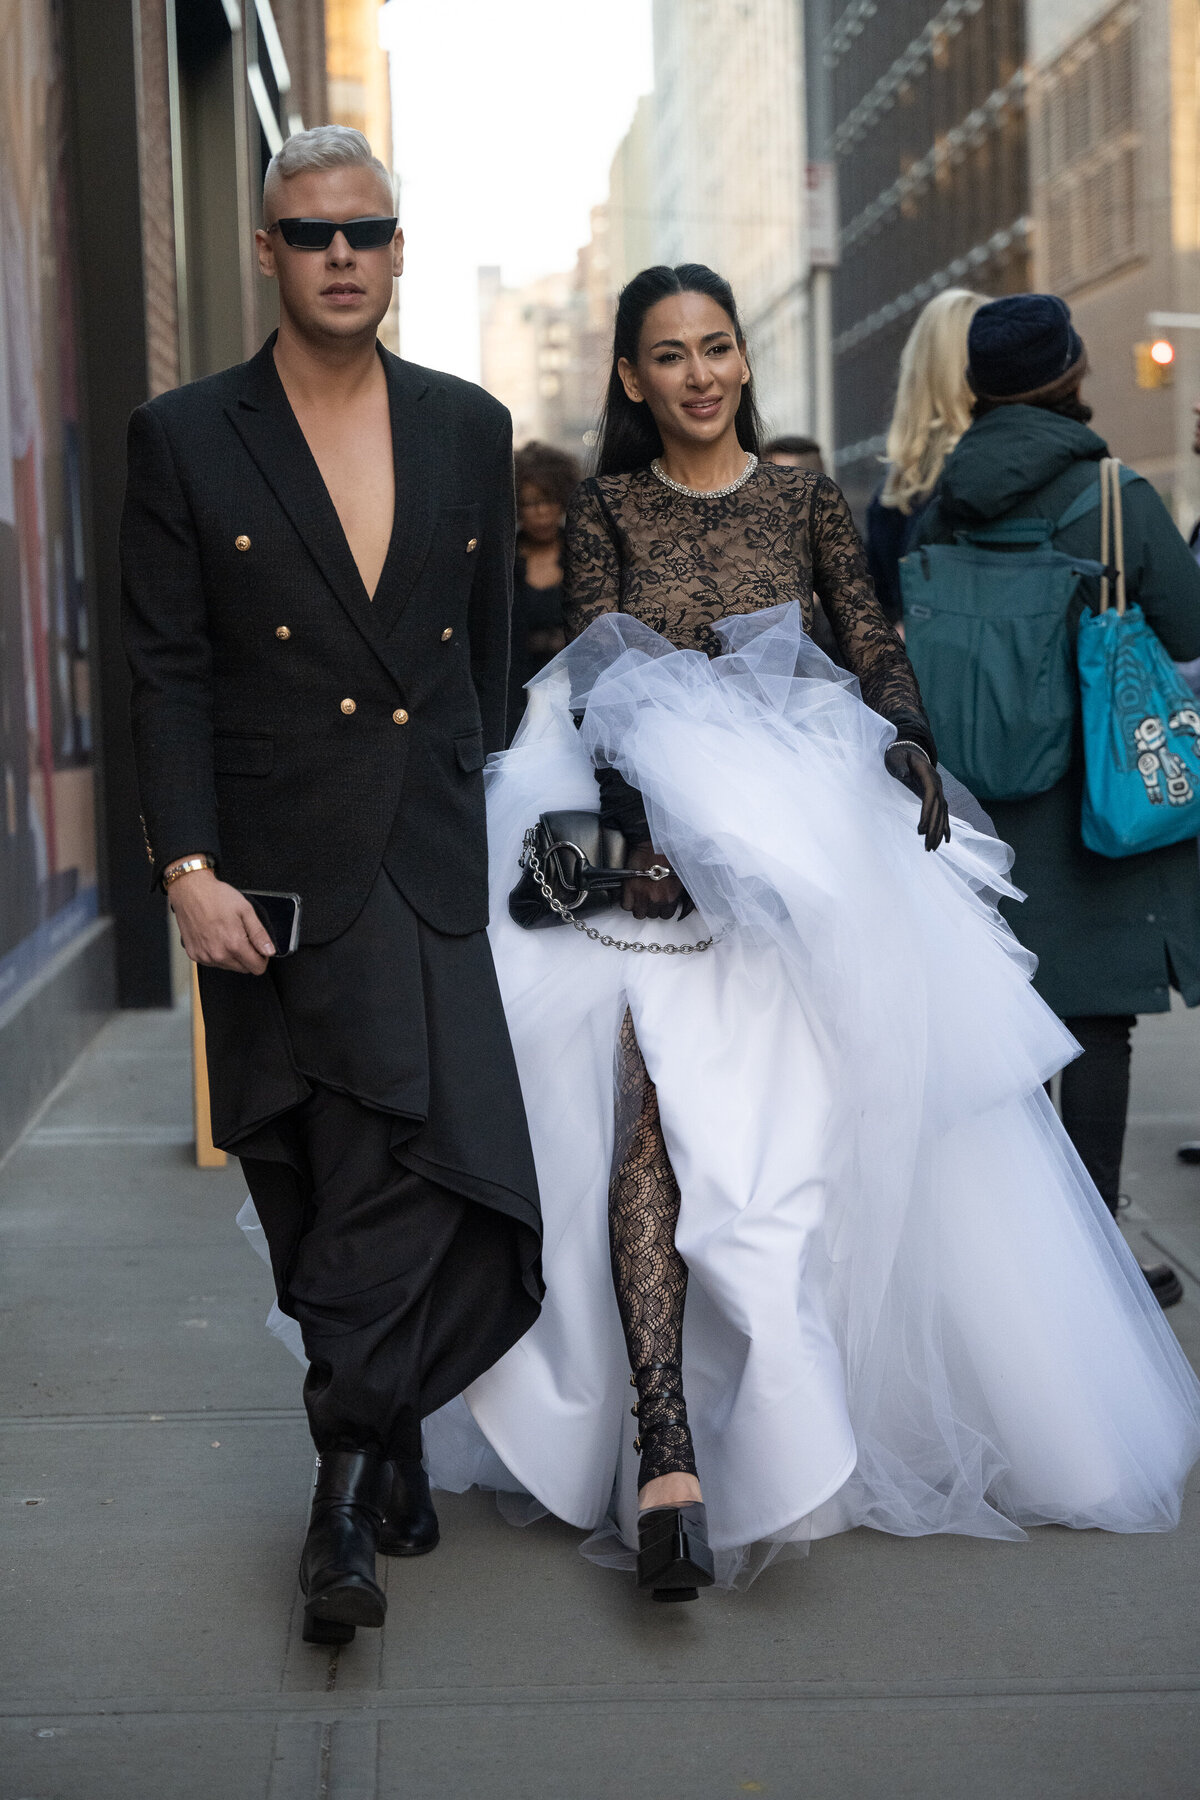 couple walking in wedding dress